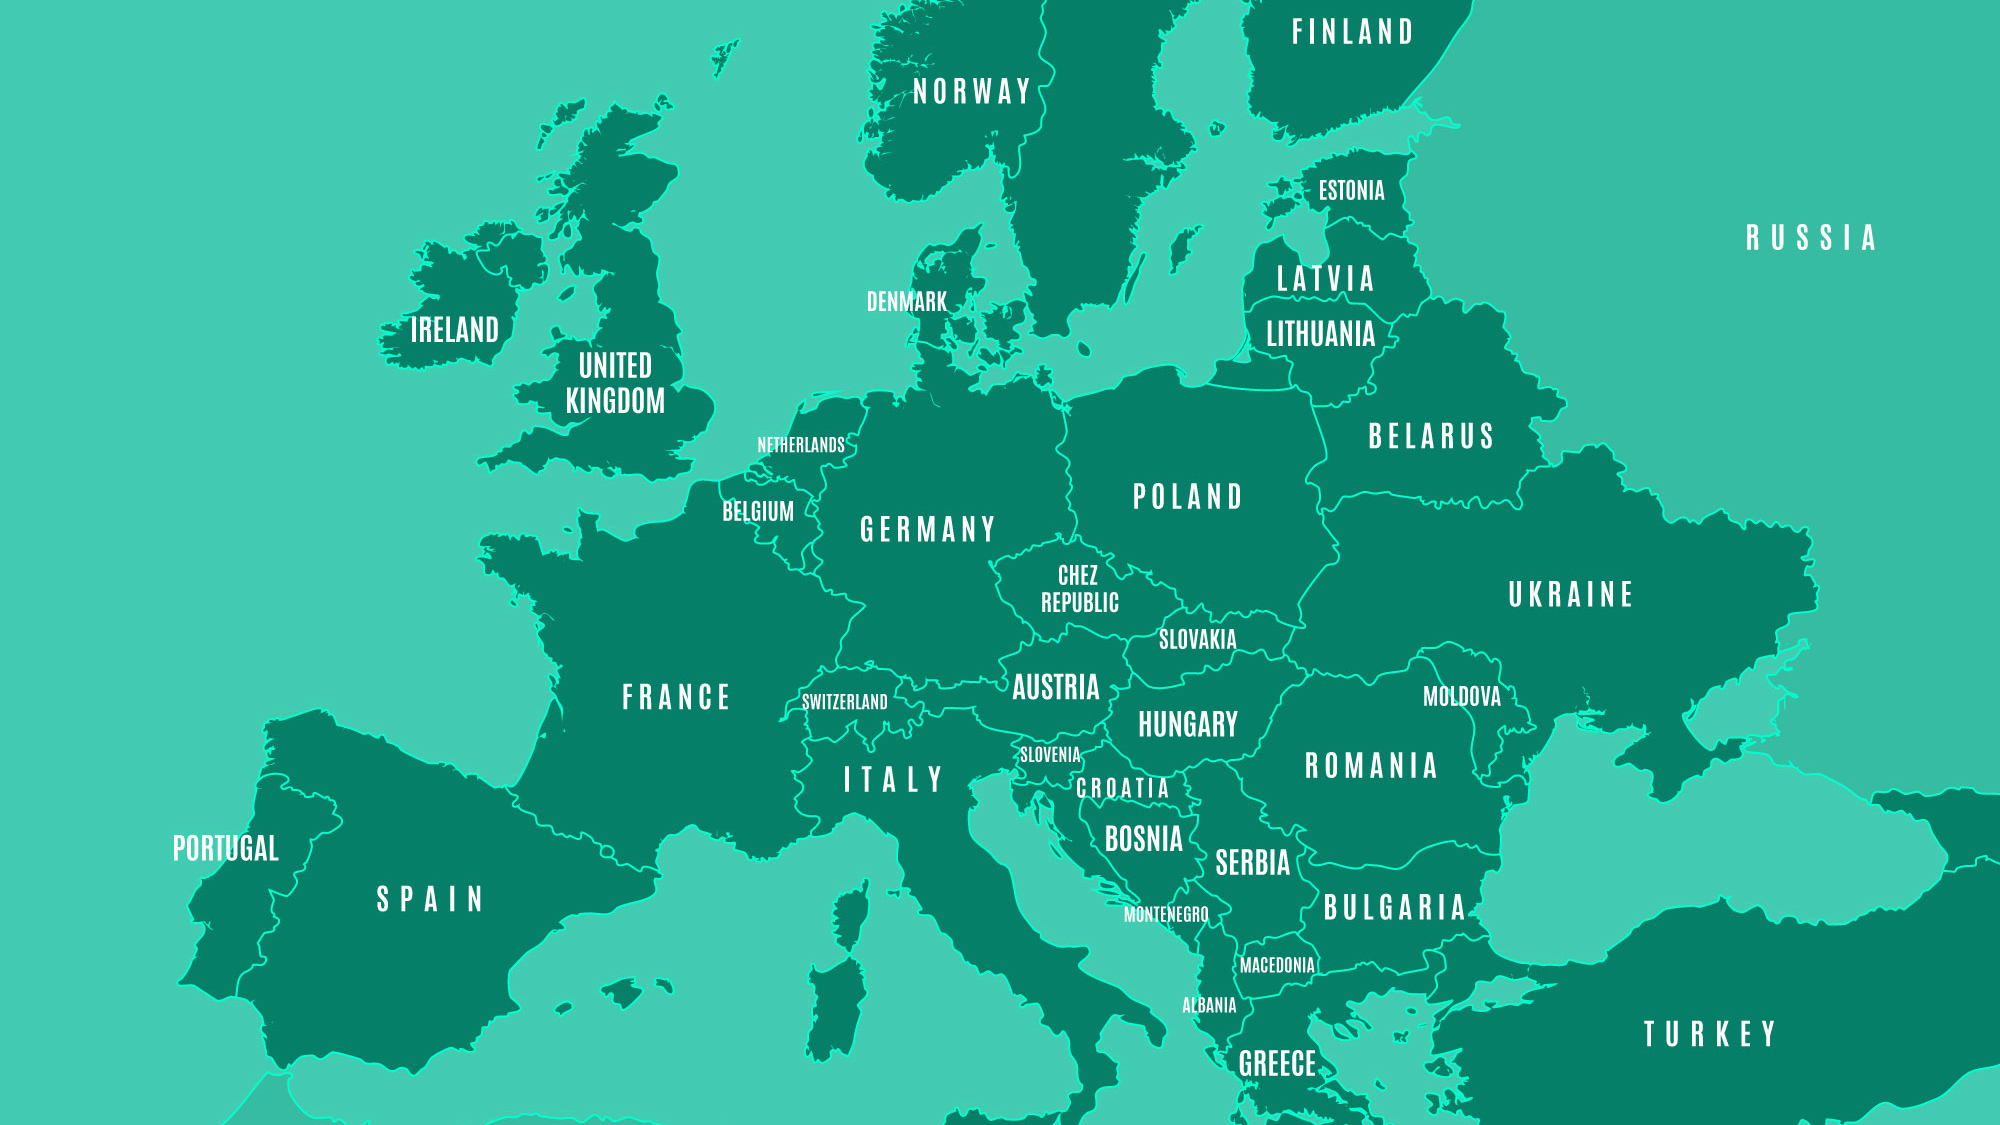 Cartographie des cultures majoritaires pour onze pays UE